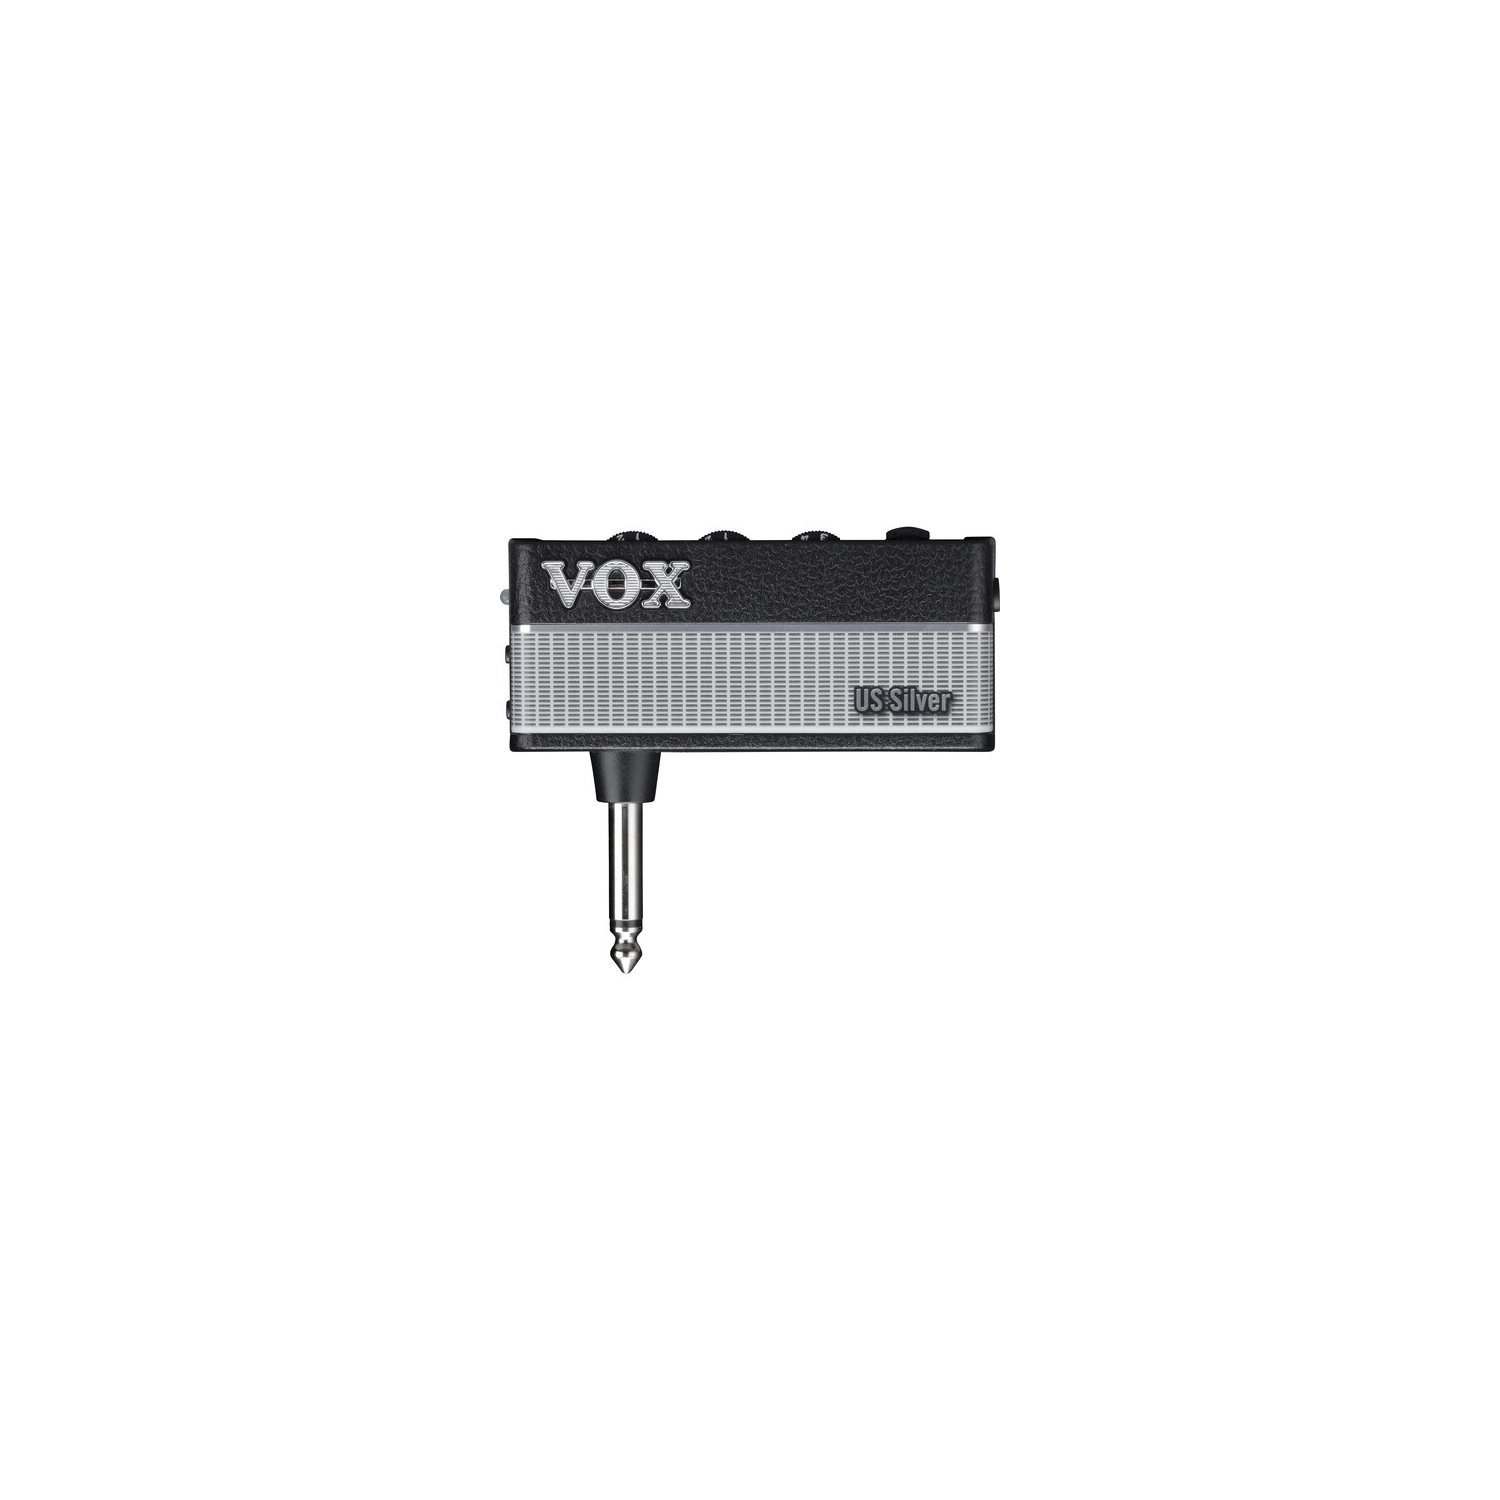 VOX - US Silver - Ampli pour écouteur AmPlug3